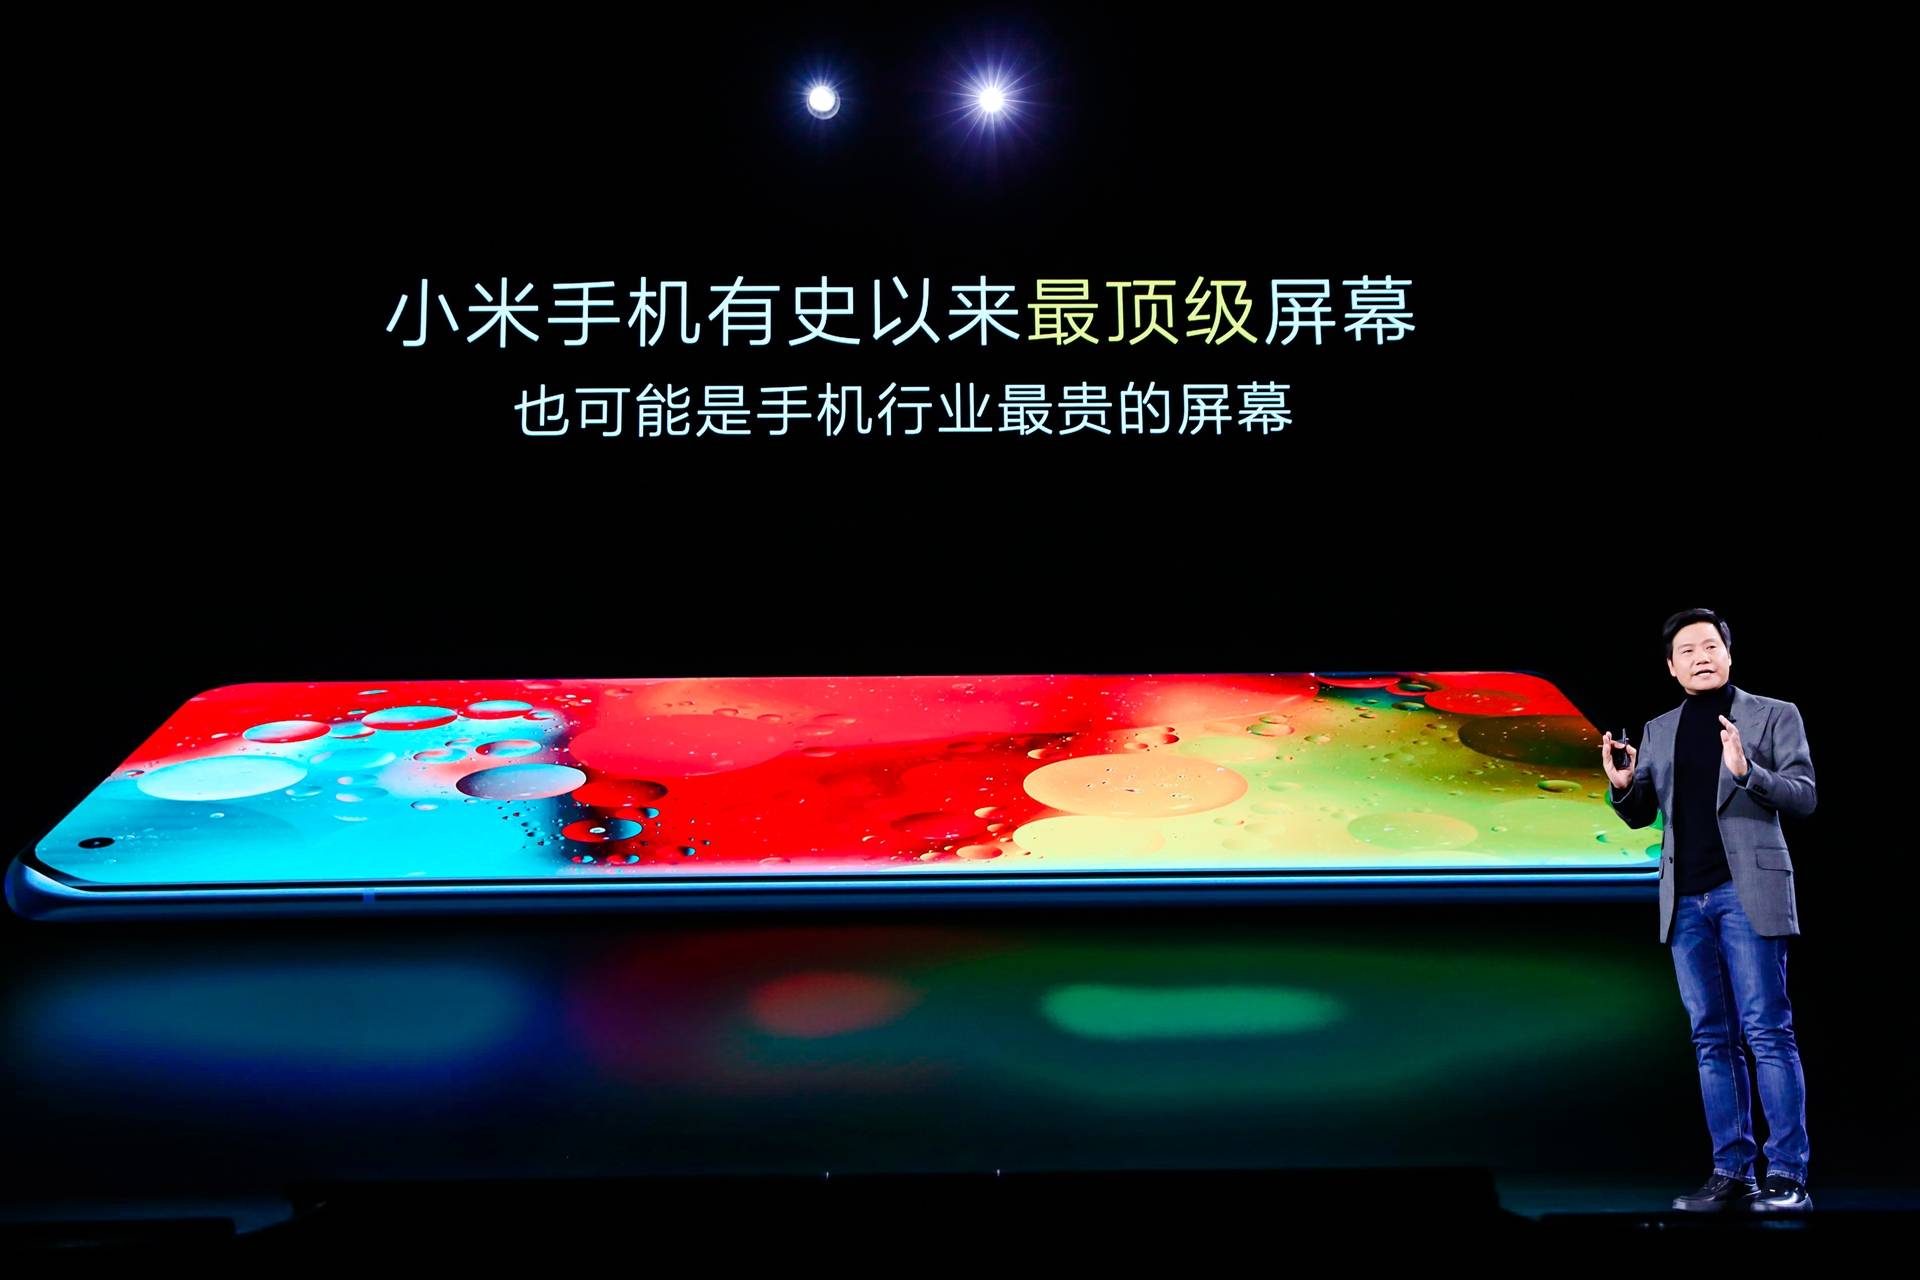 1851609159494 .pic hd - Conferenza Xiaomi Mi 11: Mi 11 offre le prestazioni più forti e lo schermo migliore, MIUI 12.5 è il corpo completo